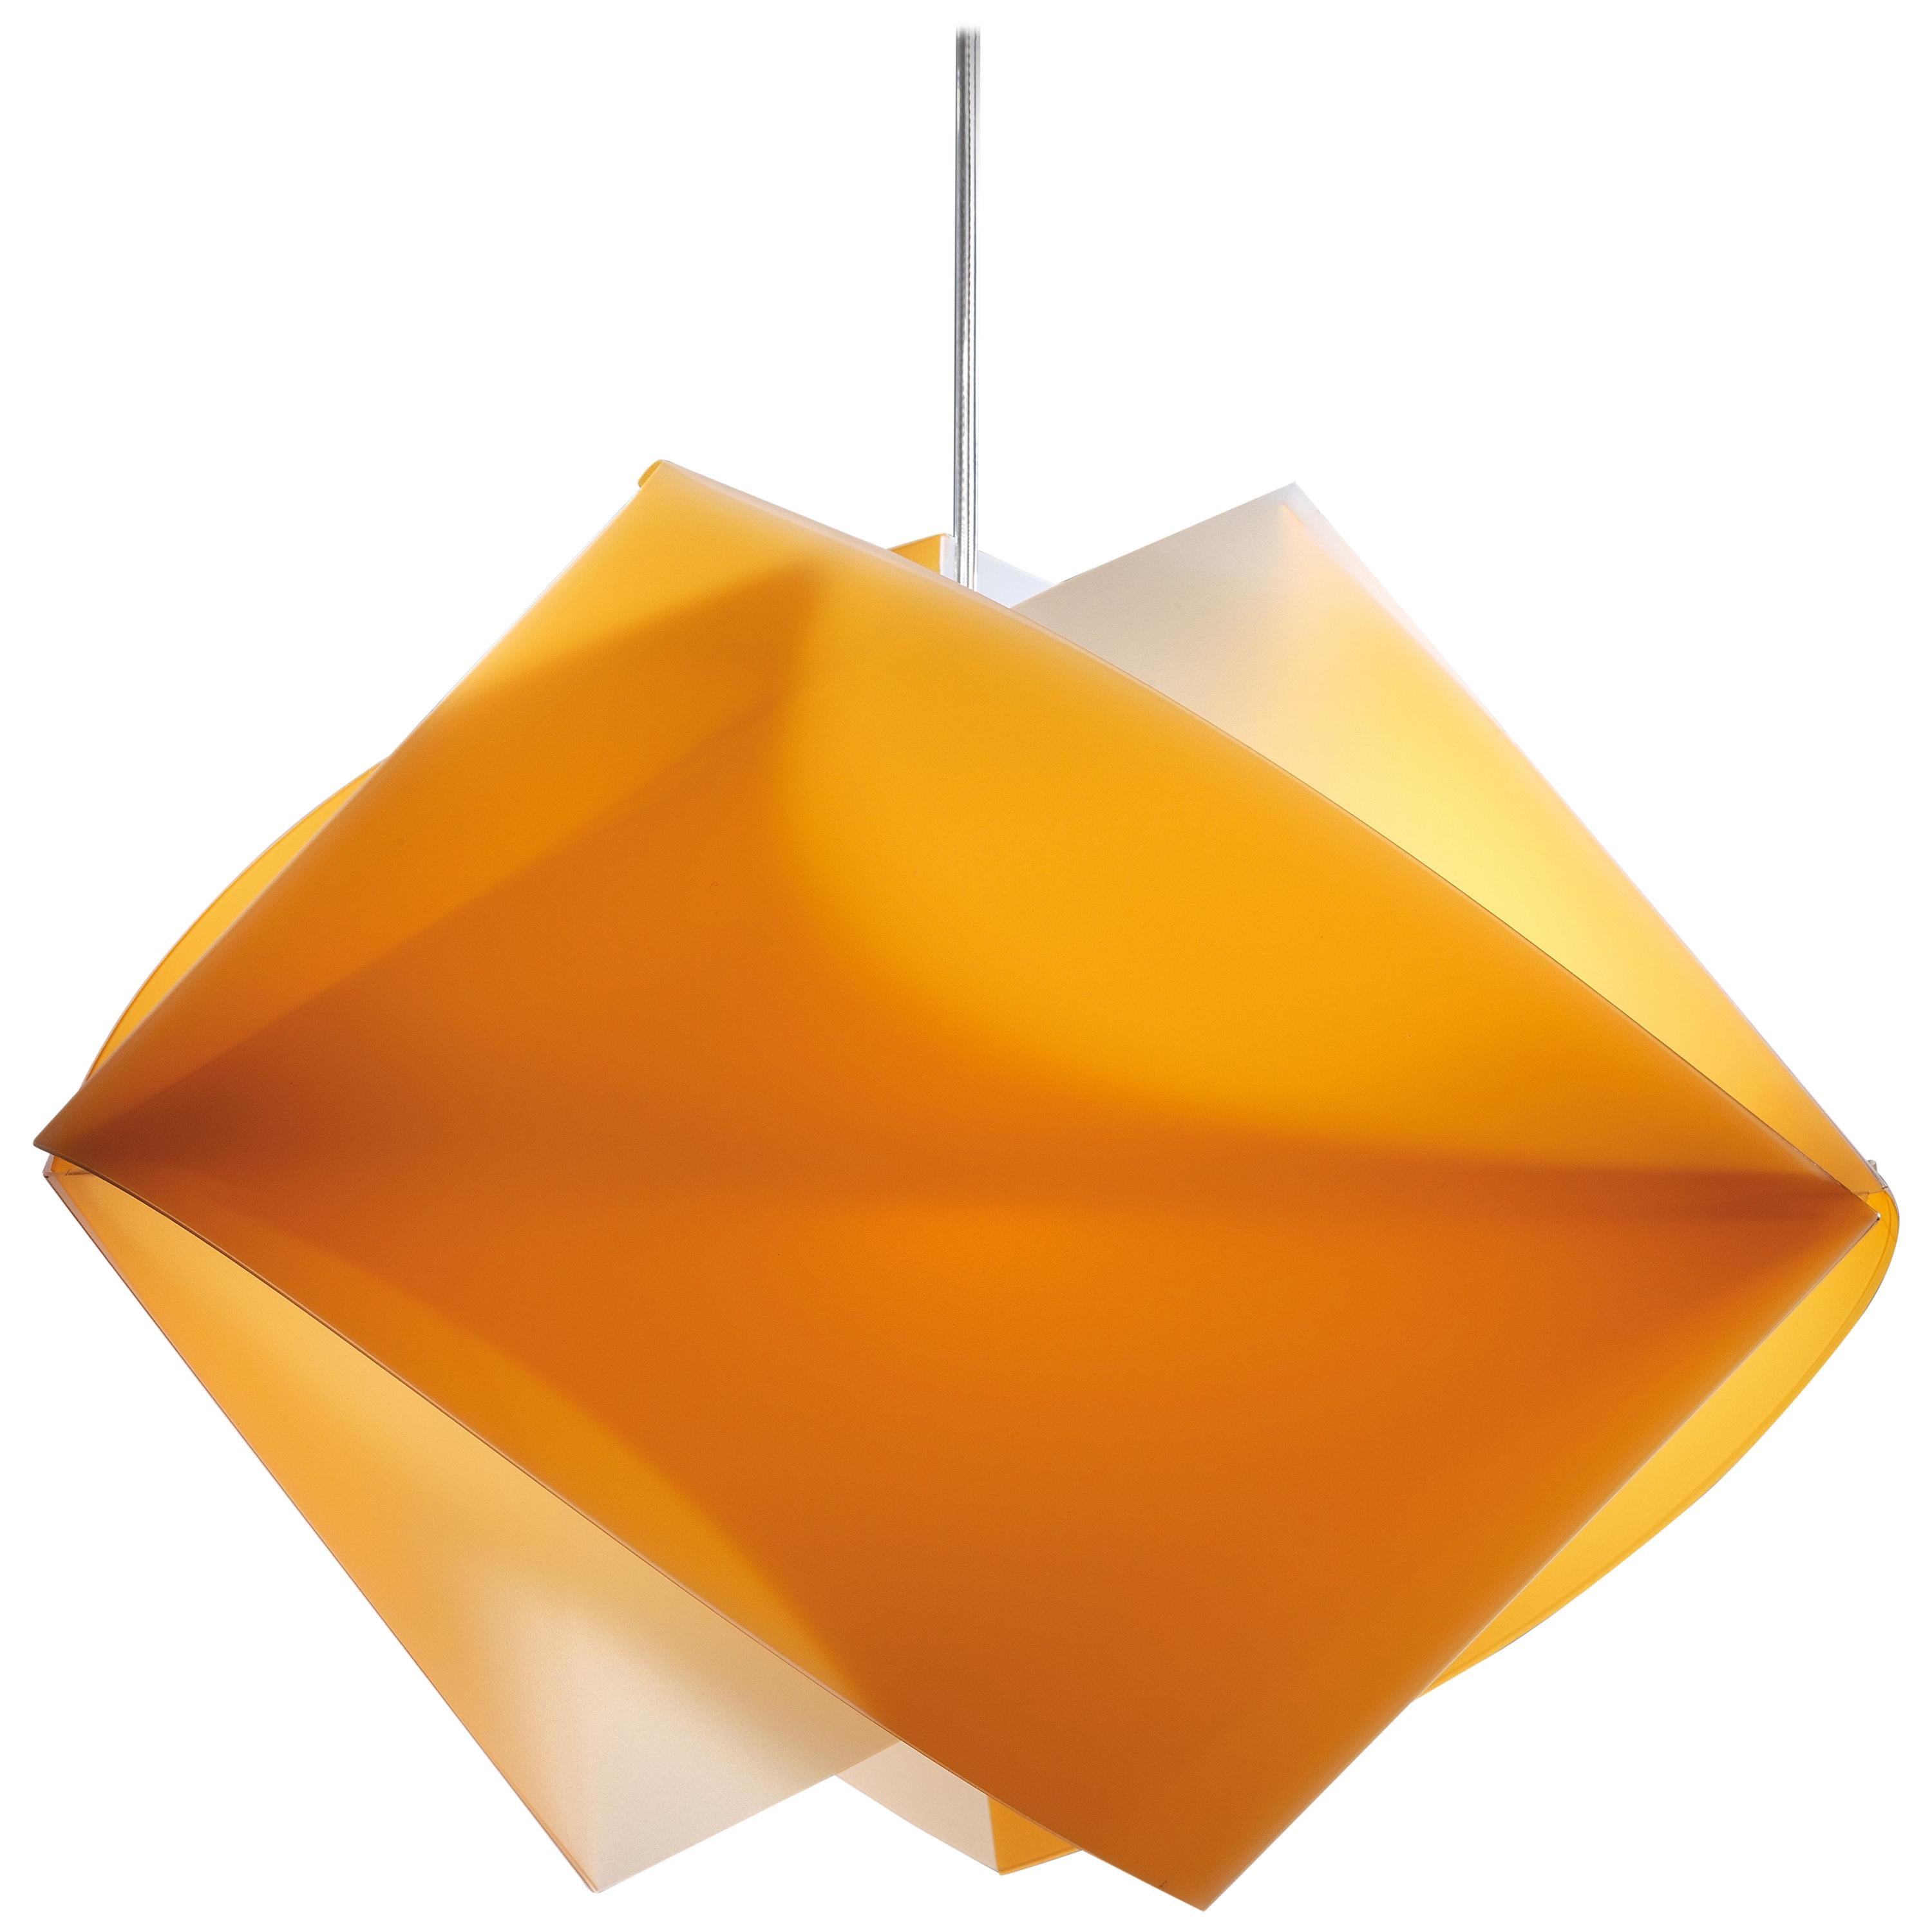 SLAMP Gemmy Pendant Light in Orange by Spalletta, Croce, Ragnisco & Wijffels